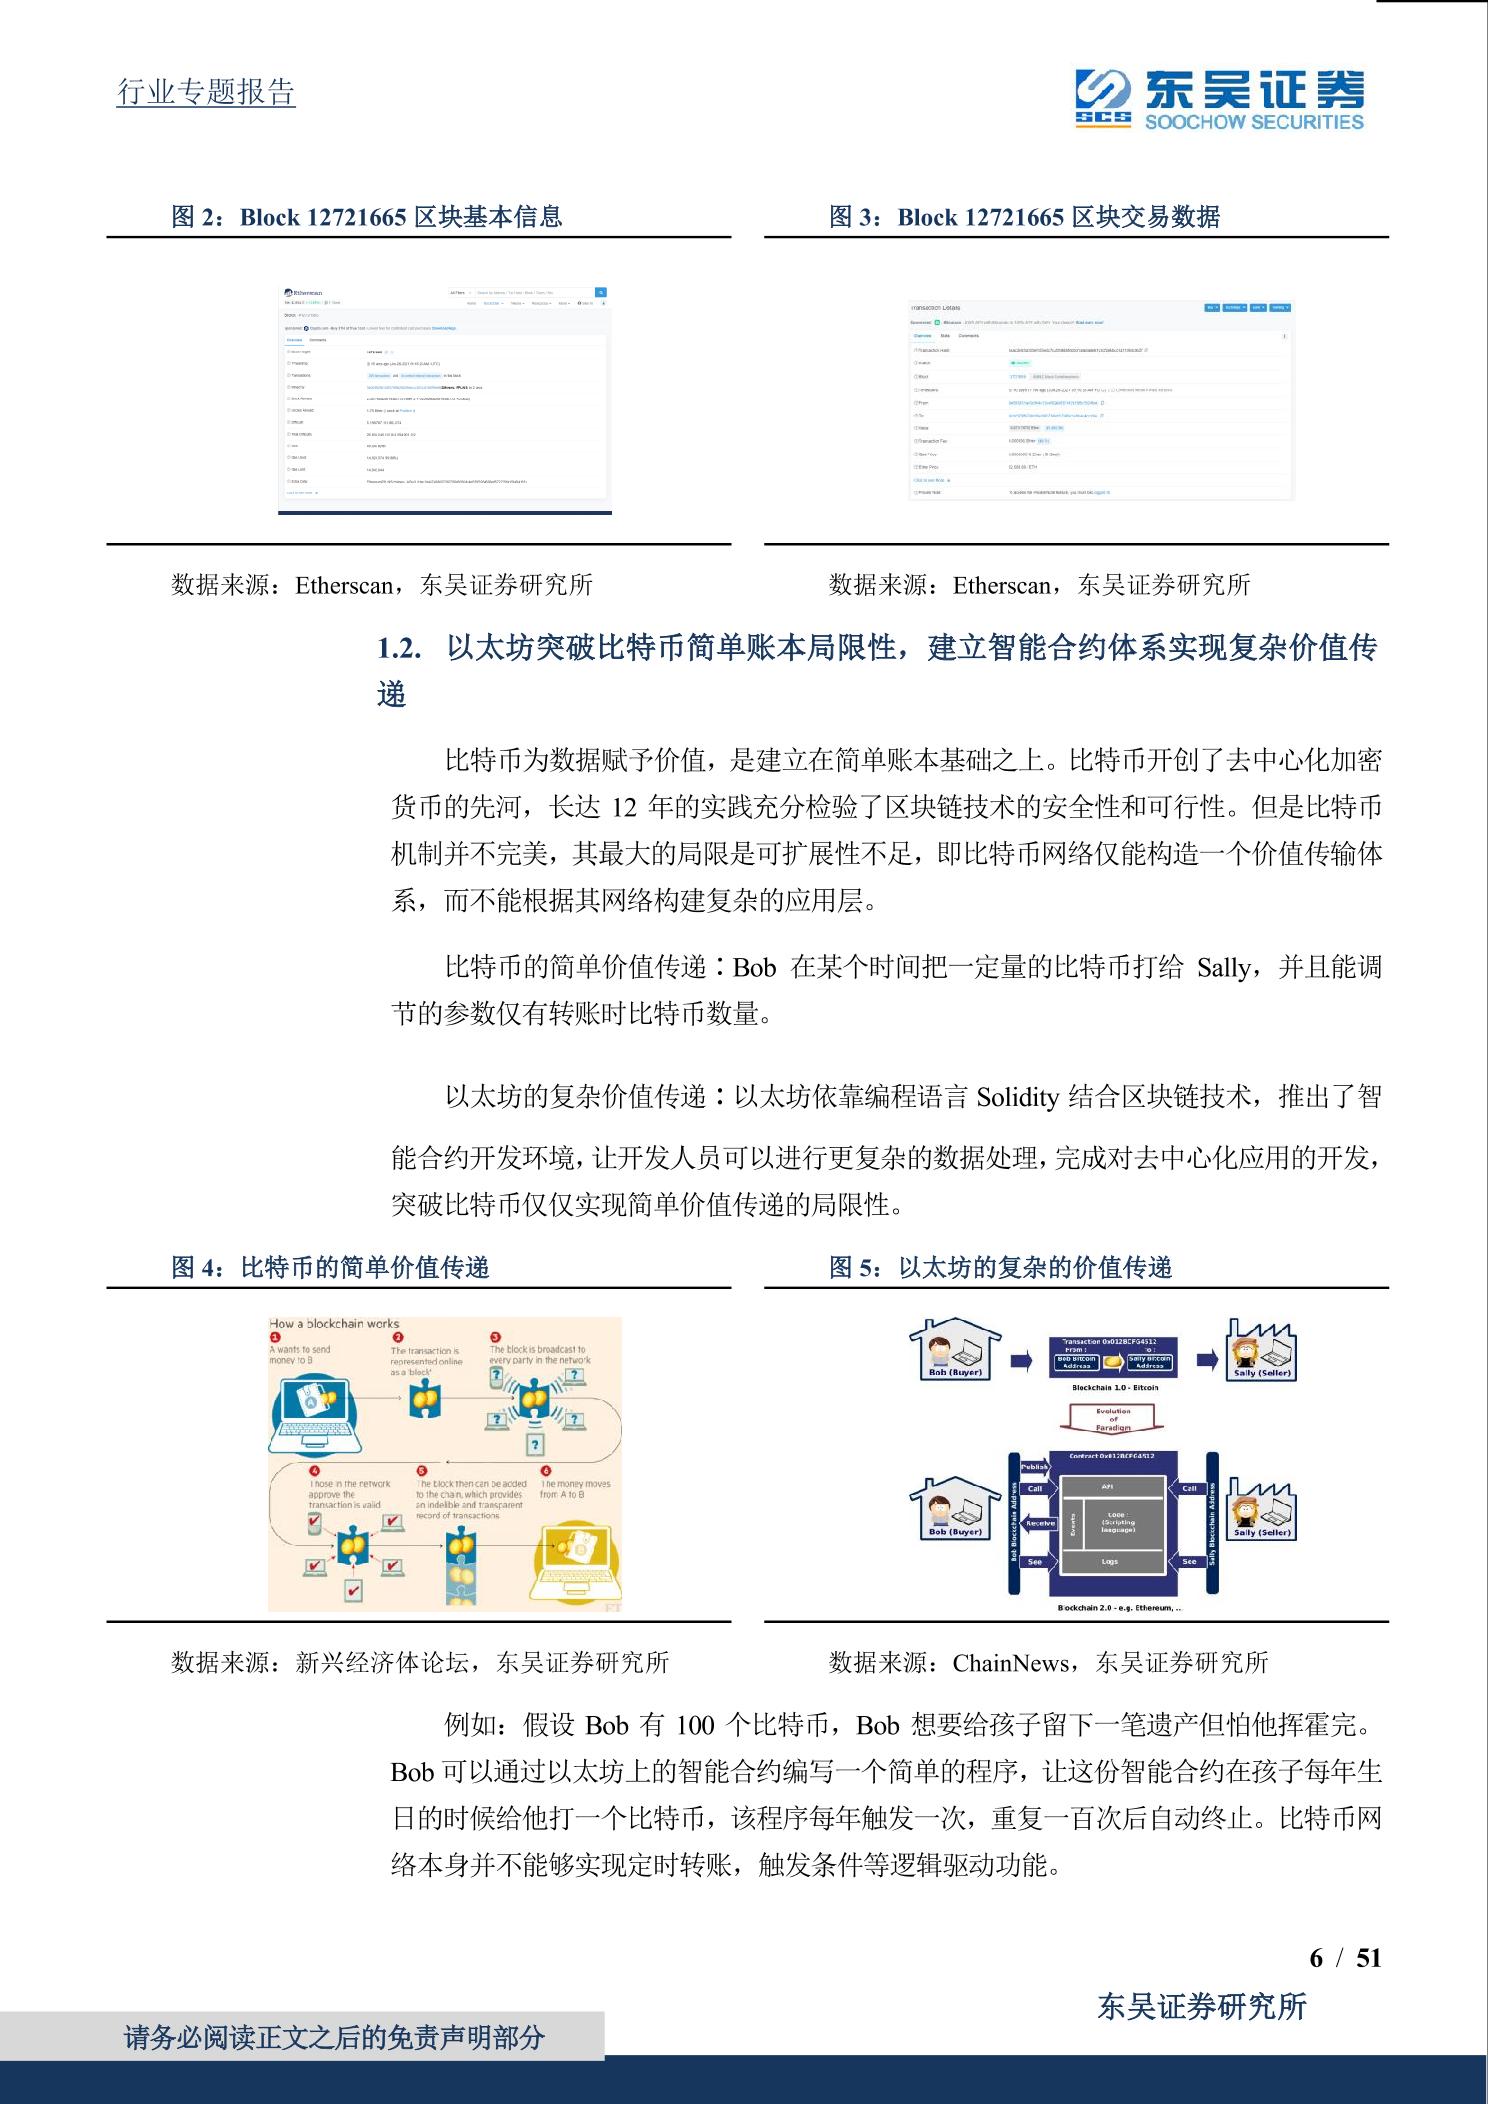 2021年「Eth」以太坊全球最大的可编程分布式超级计算机网络-东吴证券.pdf_1